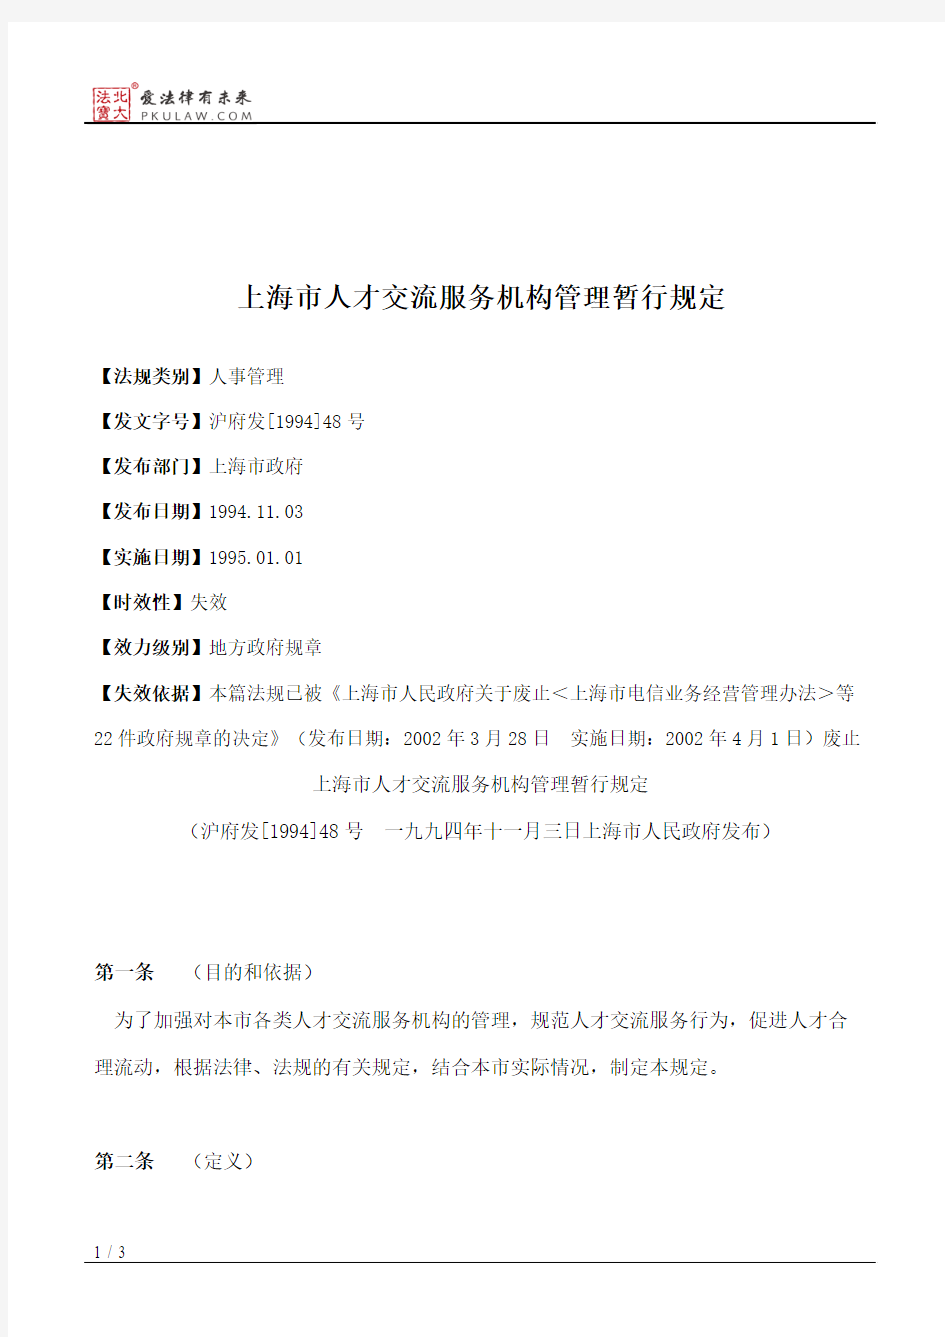 上海市人才交流服务机构管理暂行规定